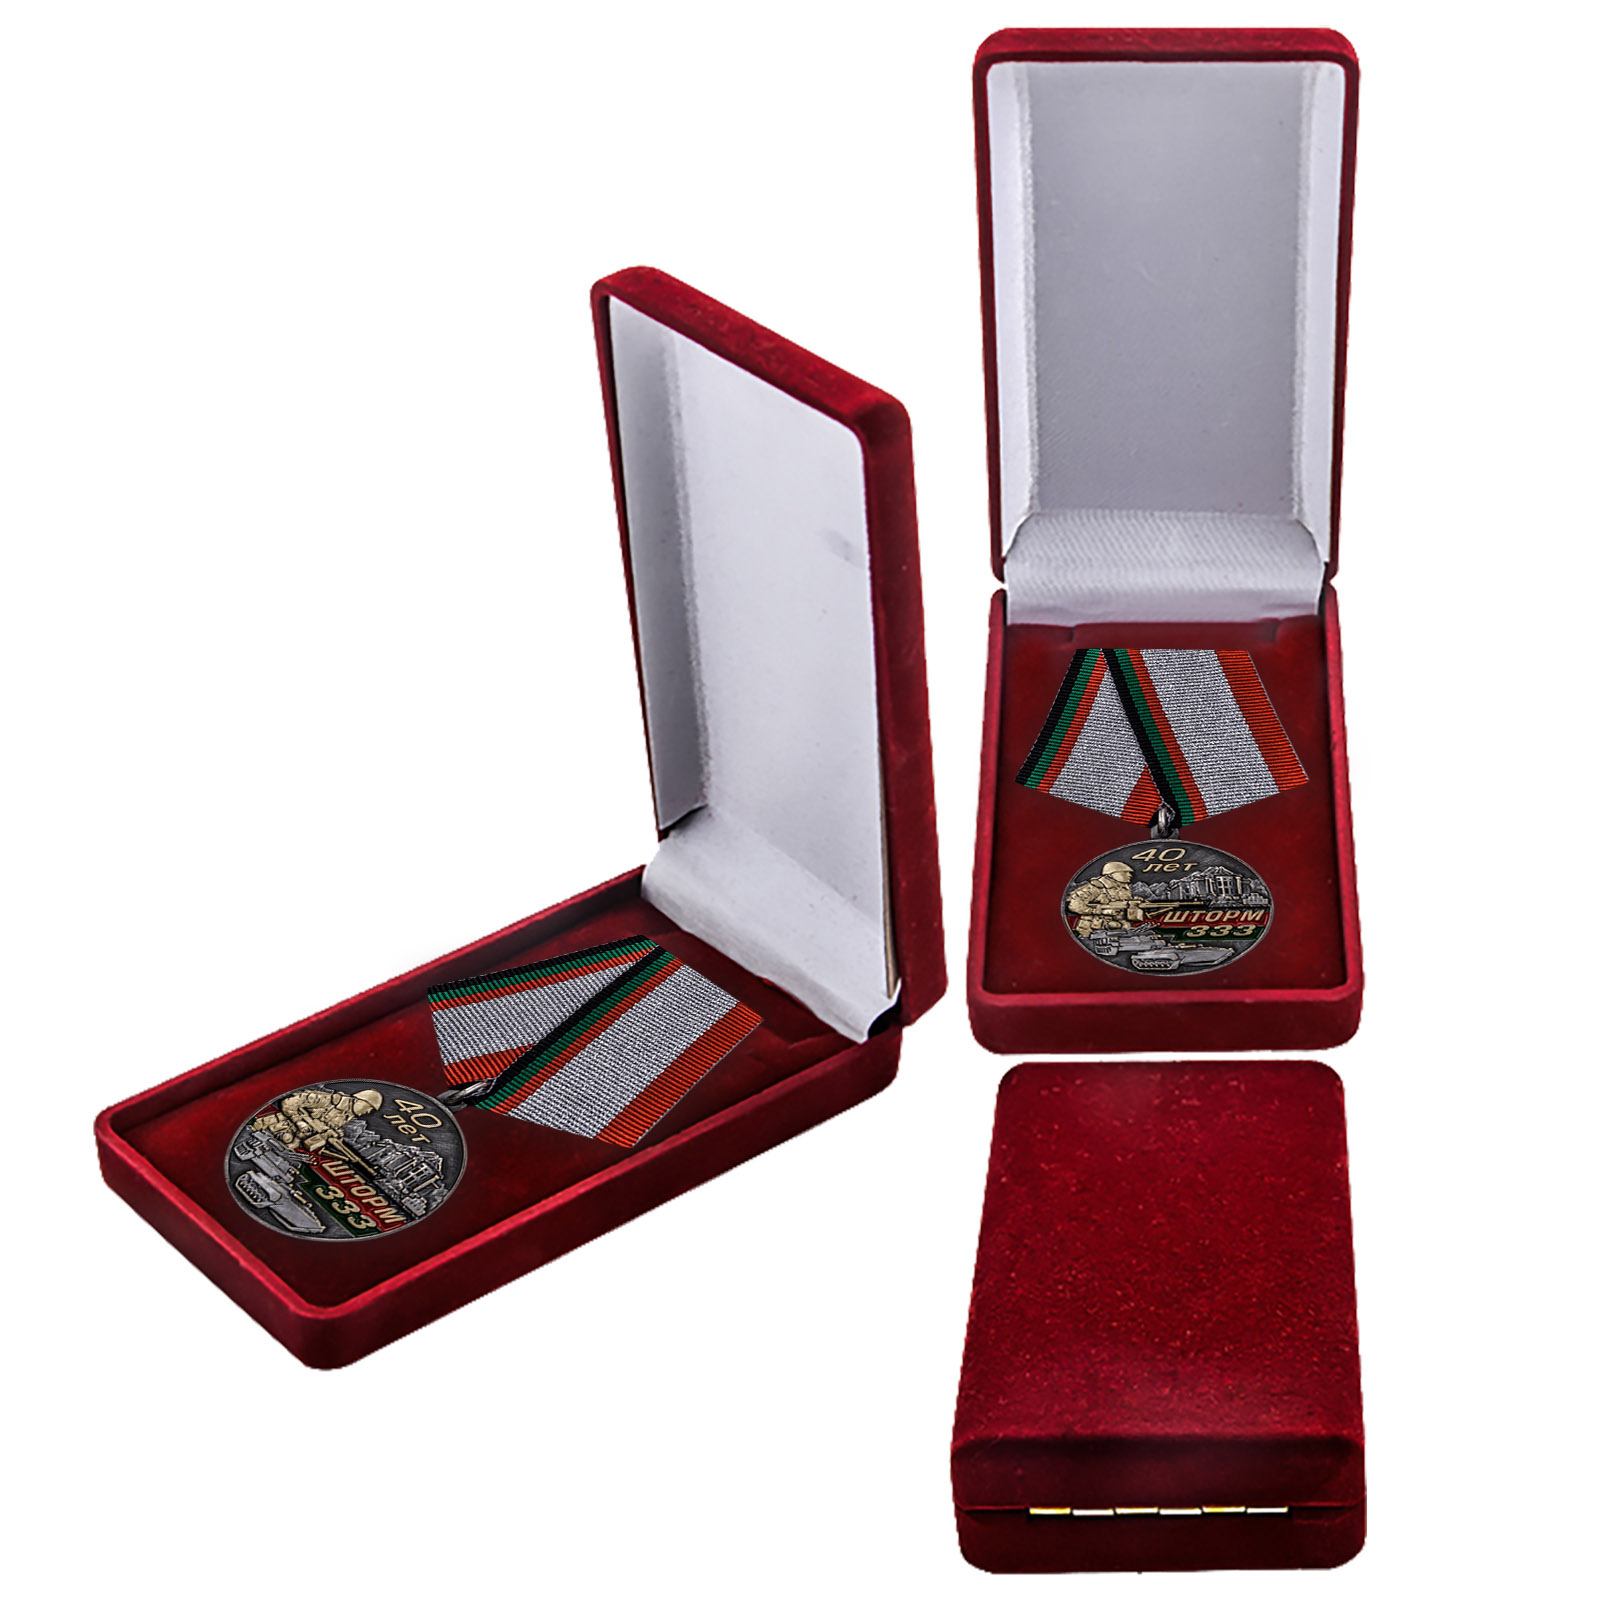 Купить памятную медаль Афганистан Шторм 333 выгодно в подарок